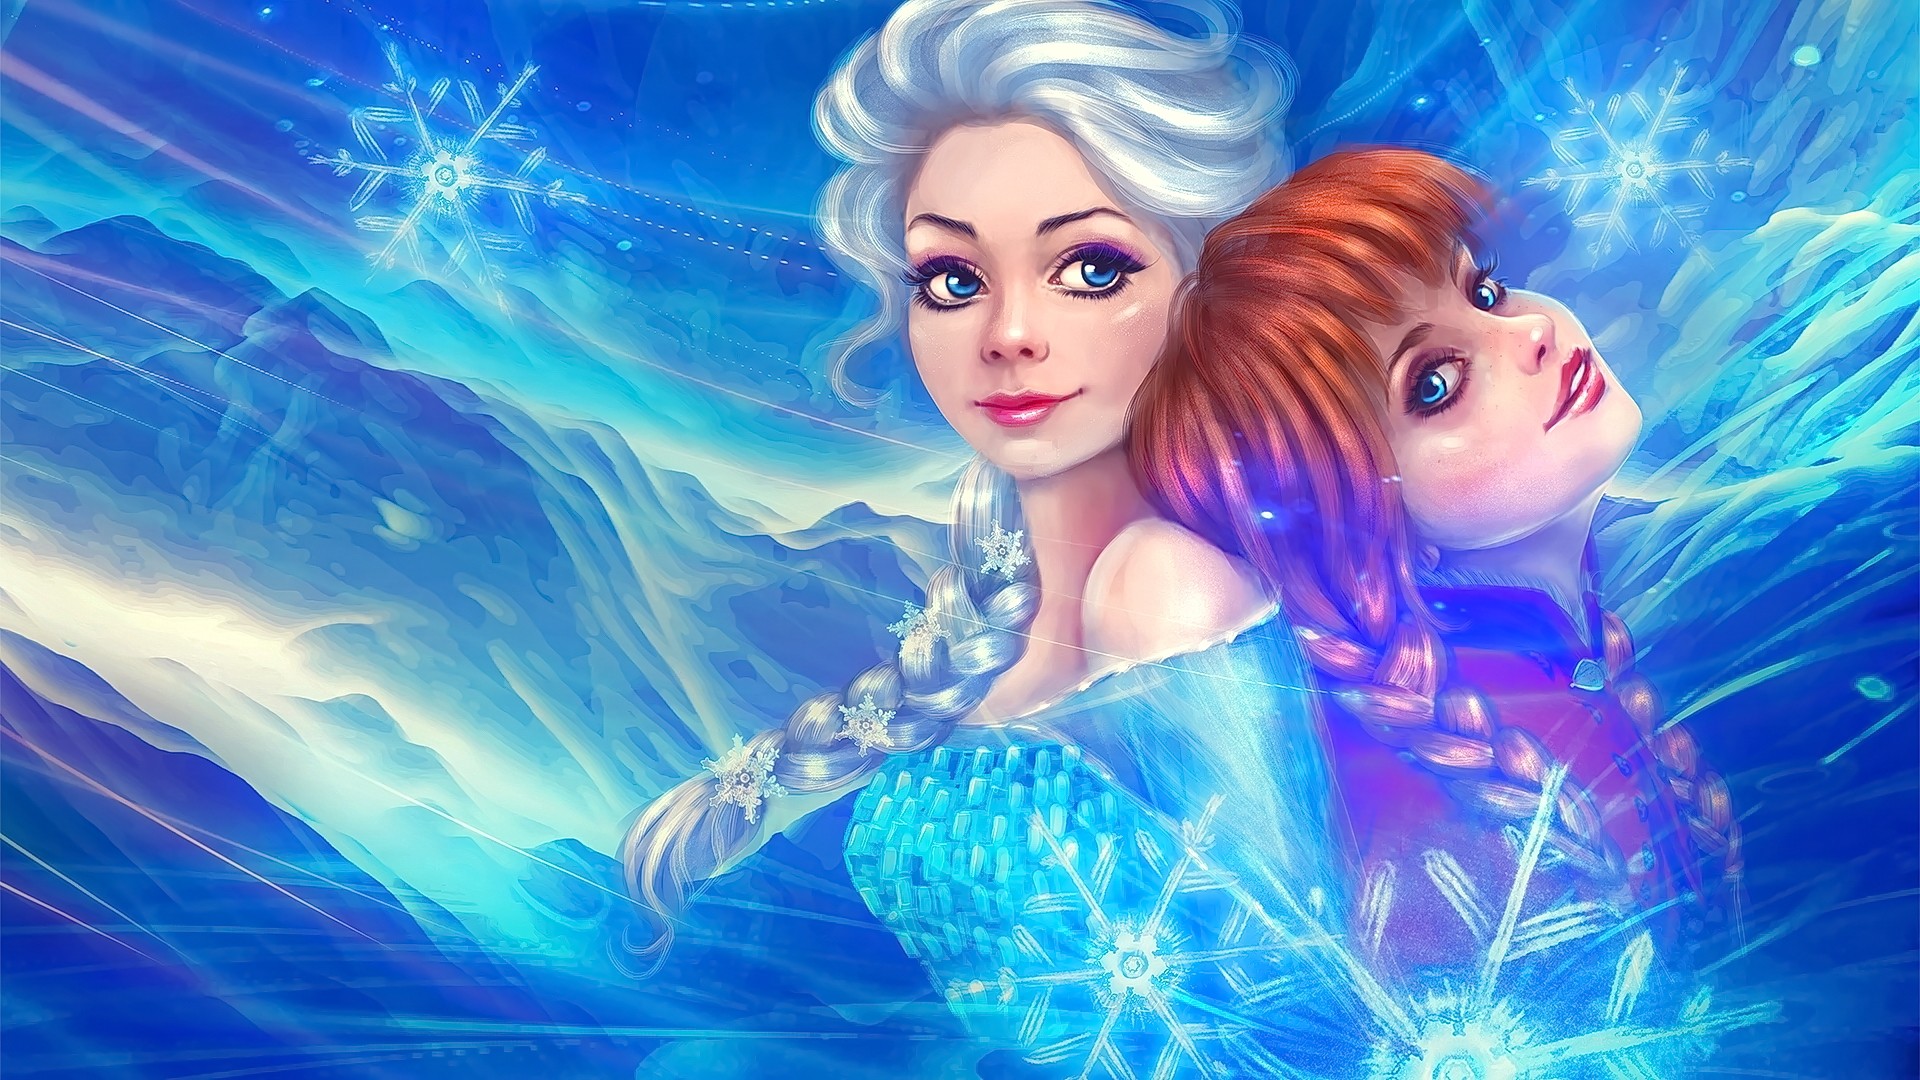 Anime 1920x1080 Frozen (movie) Disney fan art princess women two women movie characters fantasy art fantasy girl